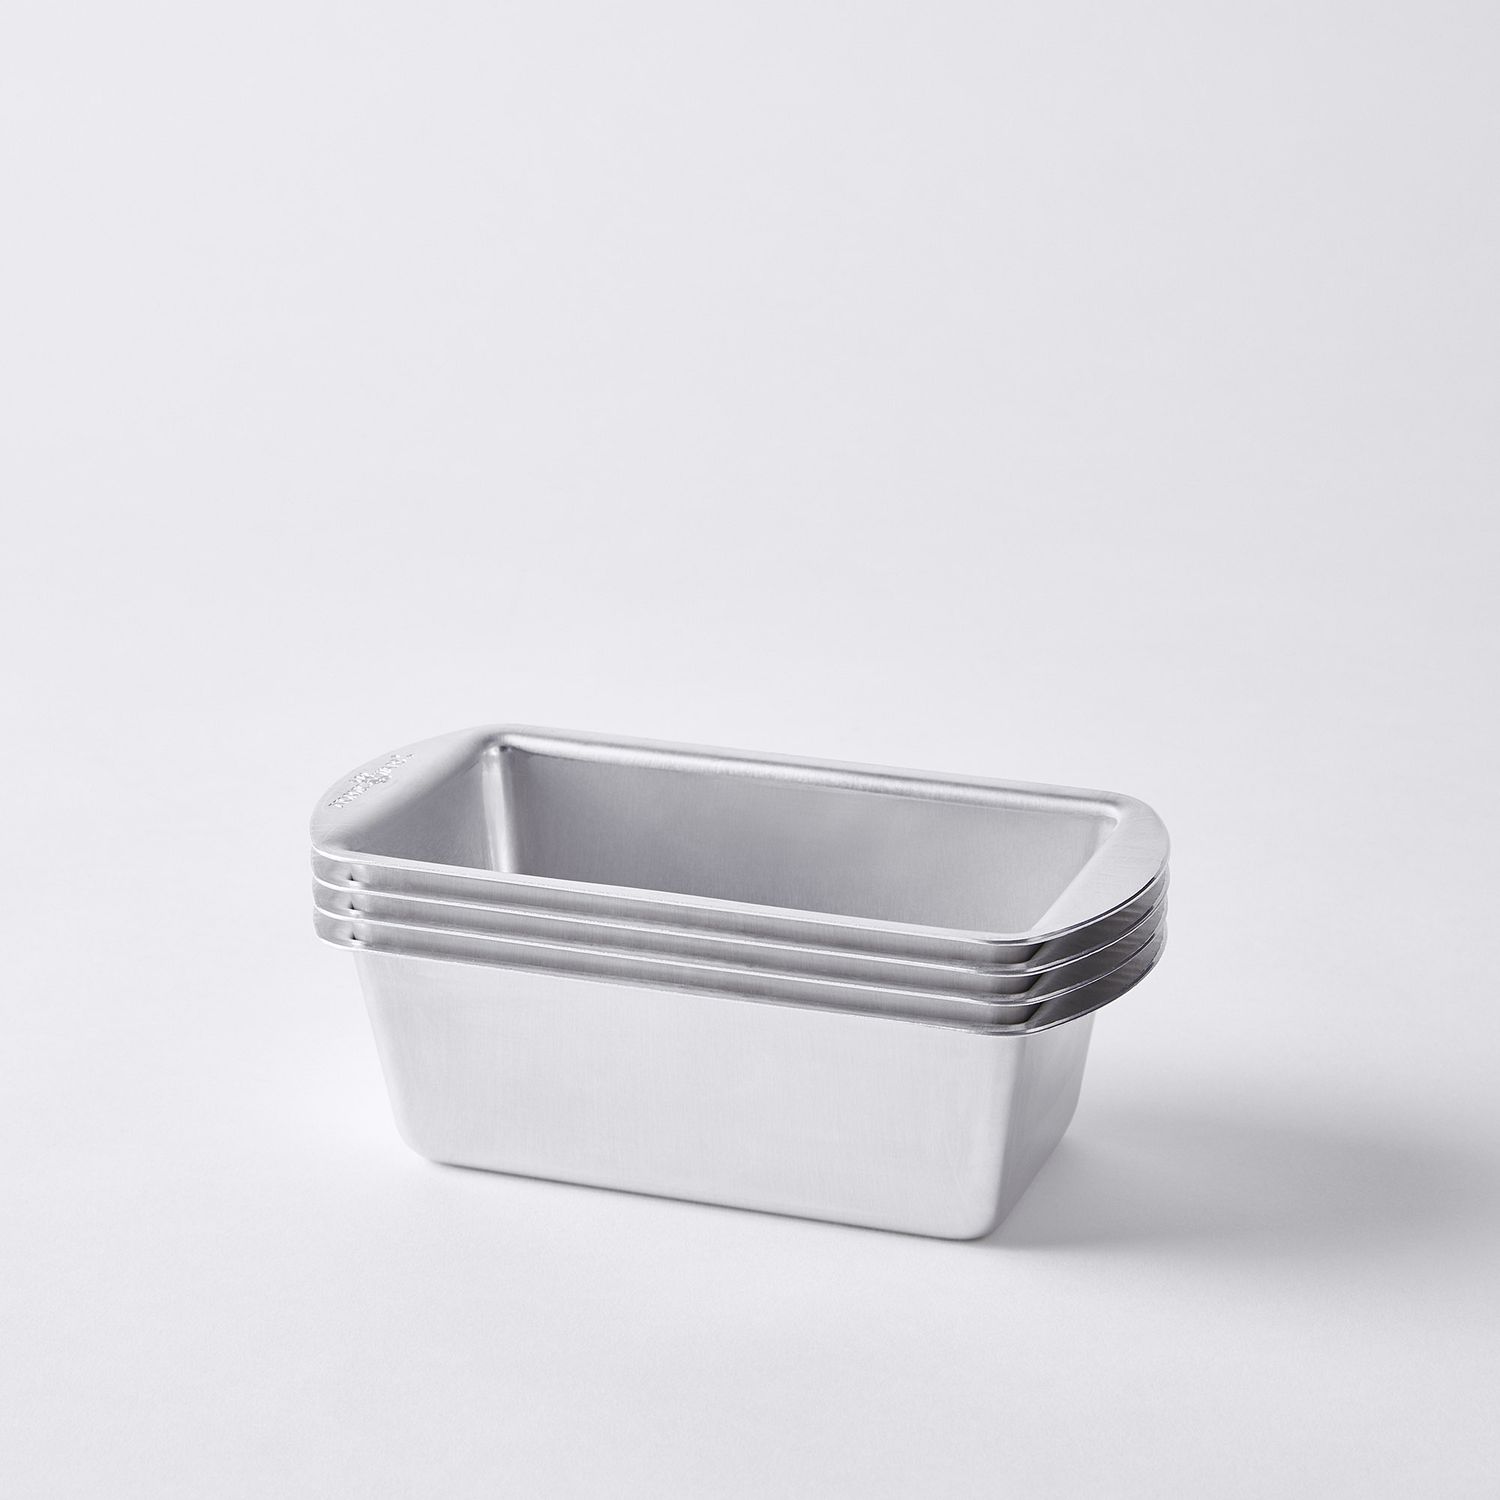 Nordic Ware Natural Aluminum Mini Loaf Pan, 8 pack - Sam's Club